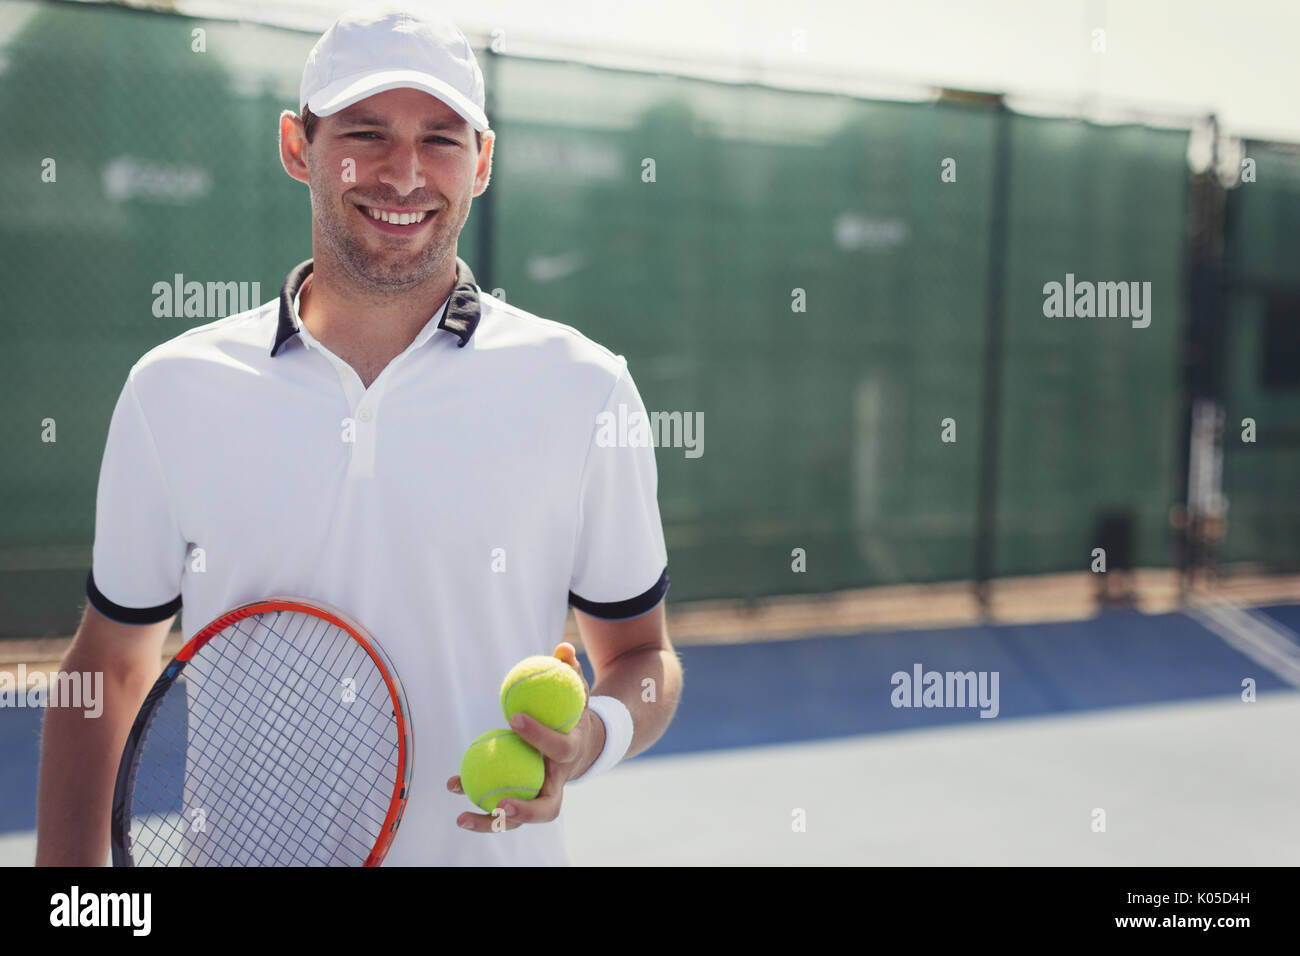 Confiant, Portrait smiling young male tennis player holding raquette de tennis et balles de tennis sur le court de tennis ensoleillé Banque D'Images